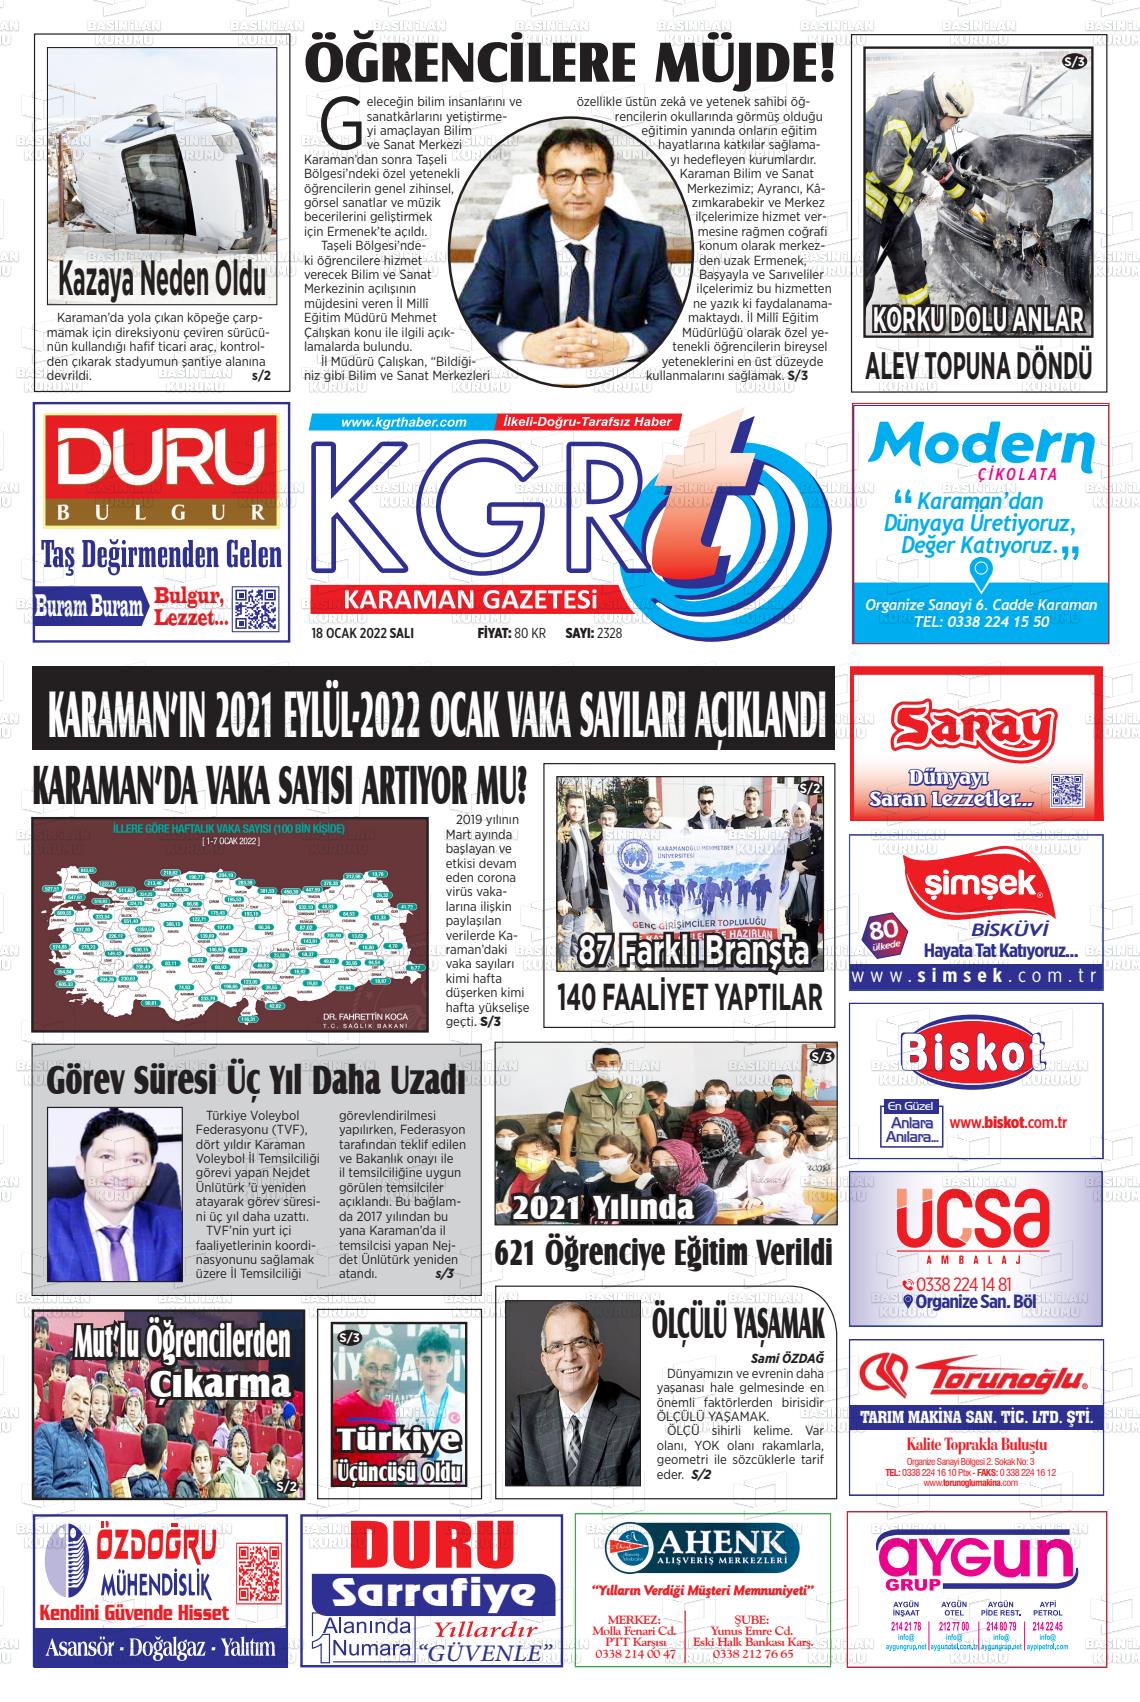 18 Ocak 2022 Kgrt Karaman Gazete Manşeti